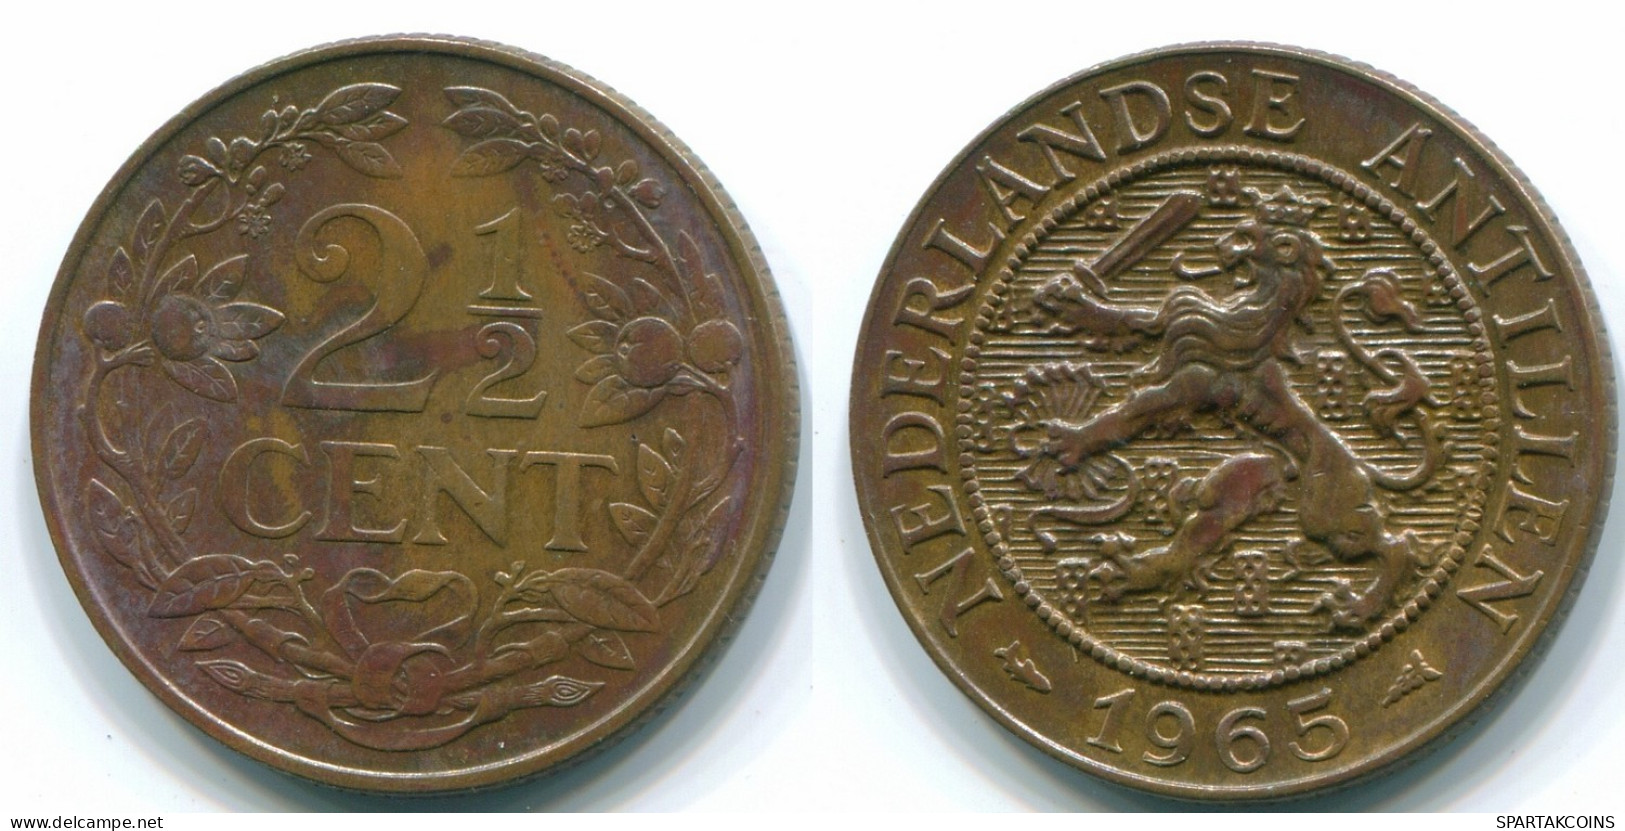 2 1/2 CENT 1965 CURACAO NIEDERLANDE Bronze Koloniale Münze #S10226.D.A - Curacao